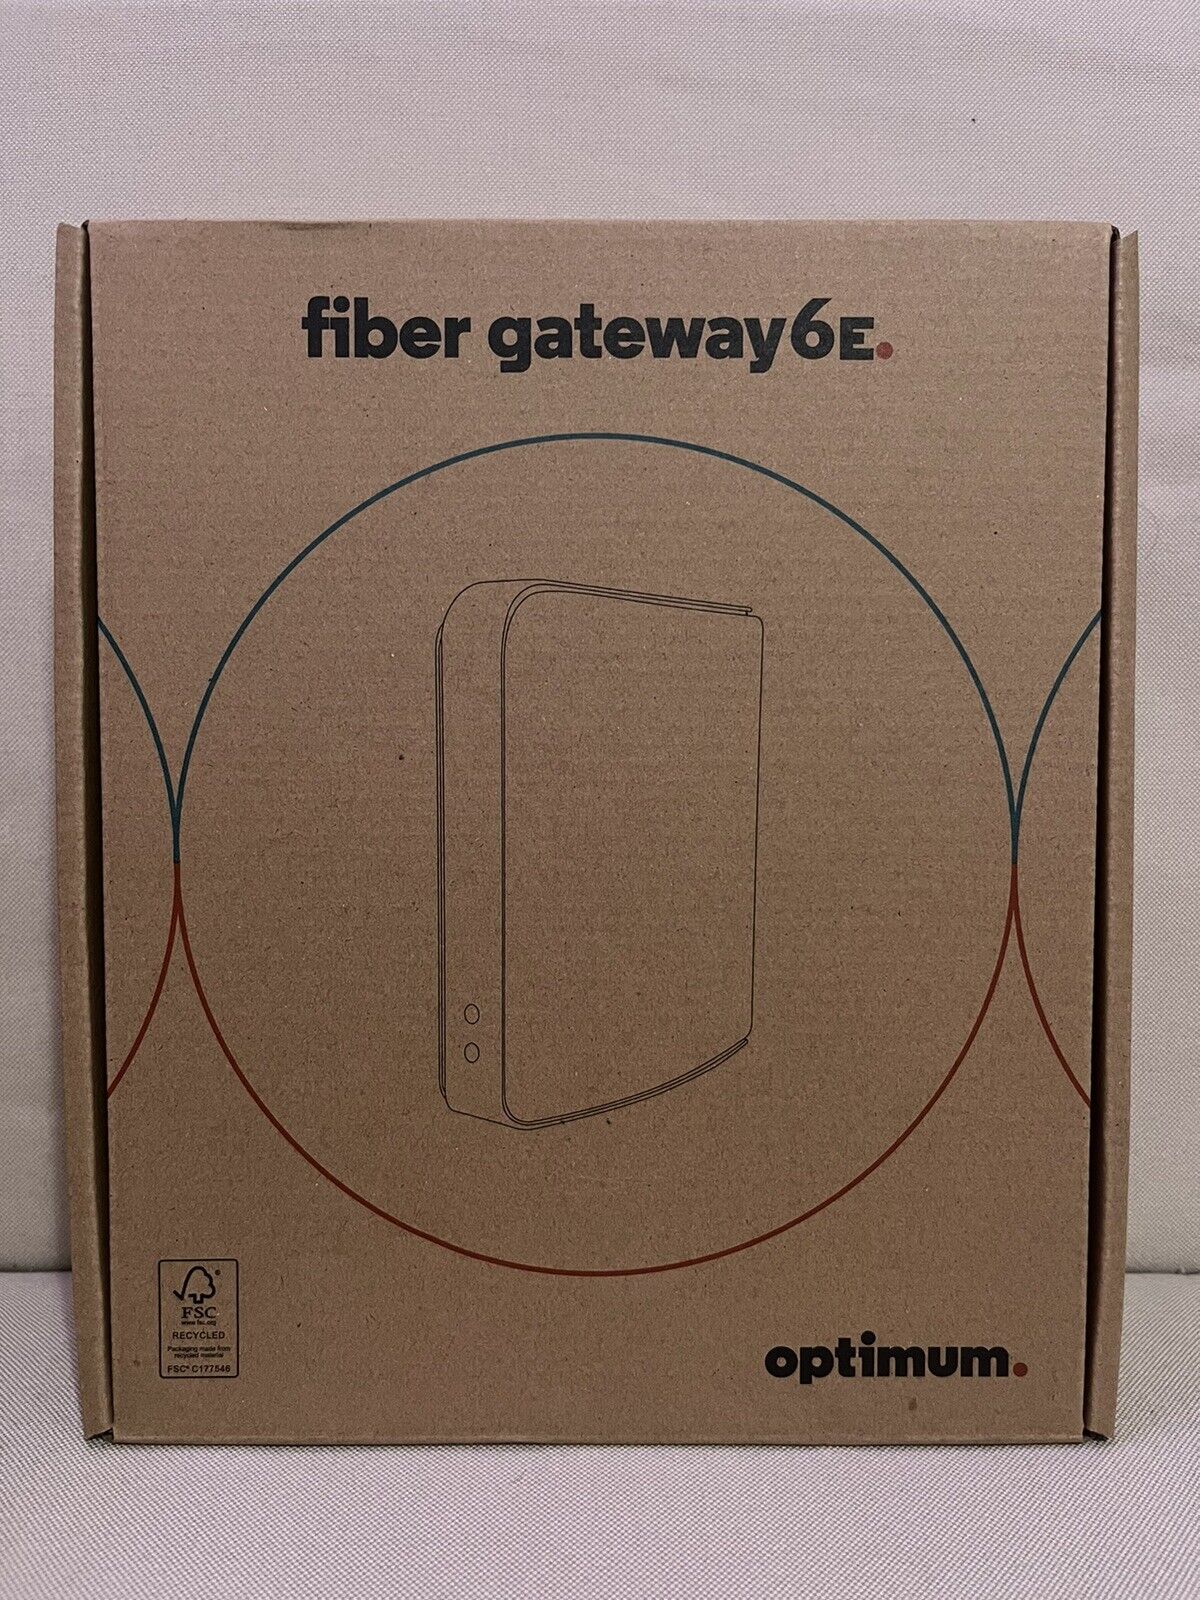 Fiber Gateway 6E Optimum Modem Model: GR240JH